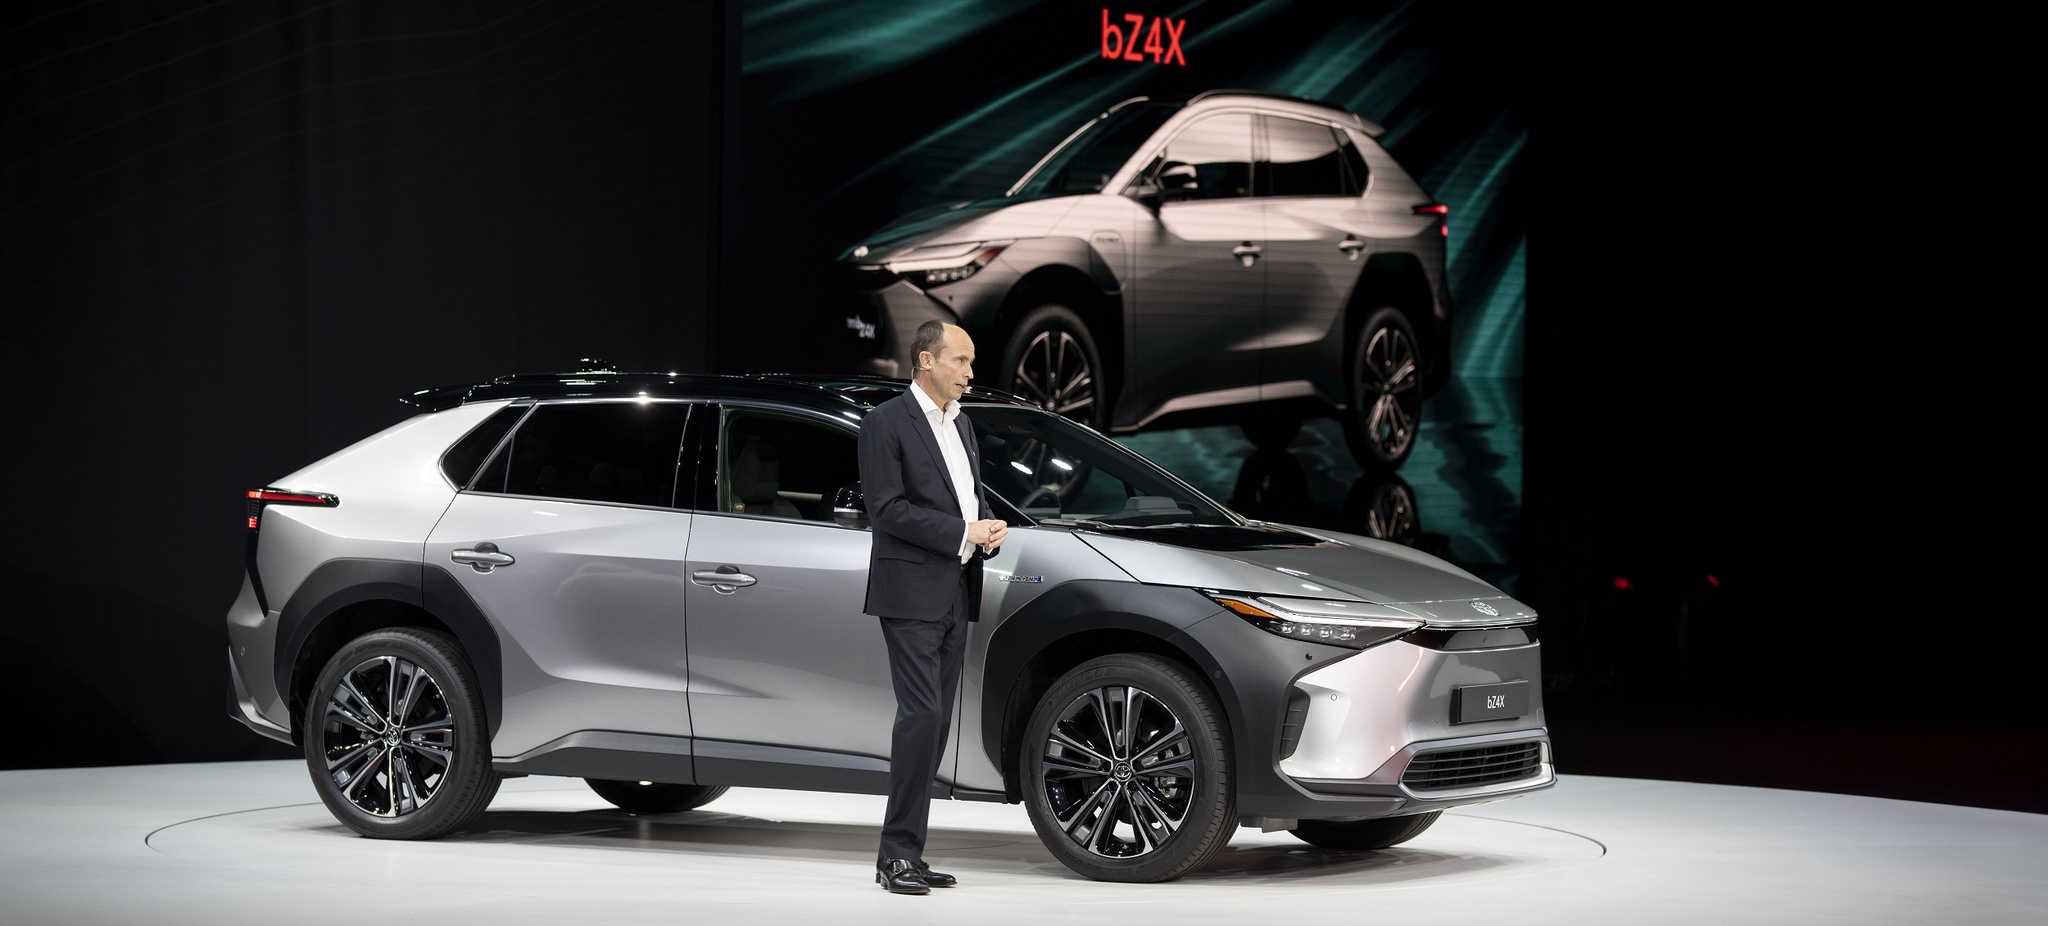 Toyota - multinacional - carros a hidrogênio - gasolina